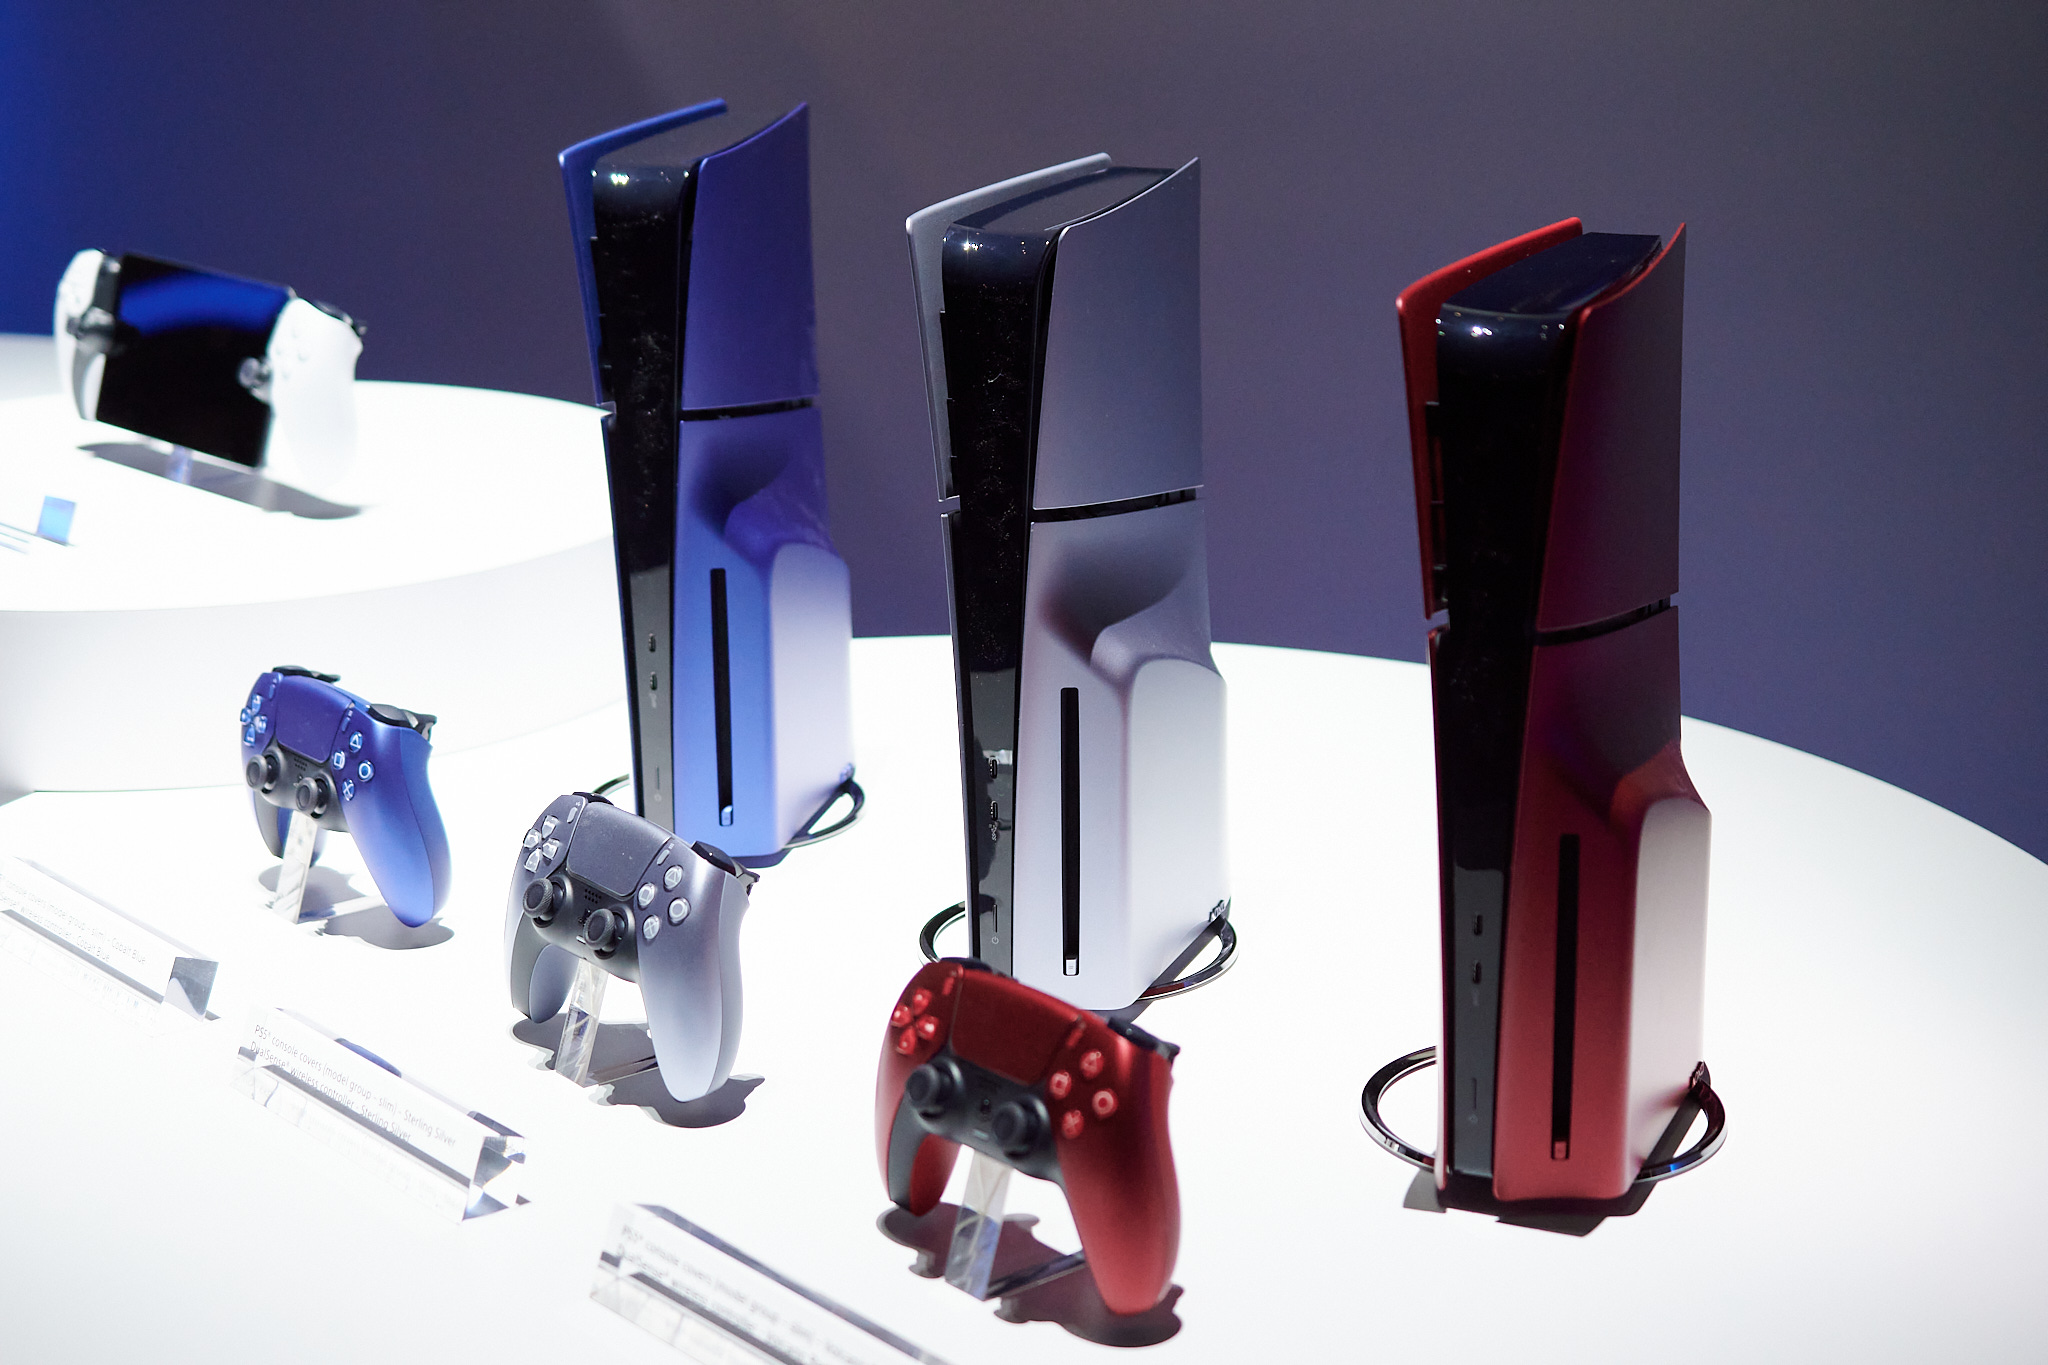 PlayStation 5 Slim comparada con PlayStation 5 en imágenes